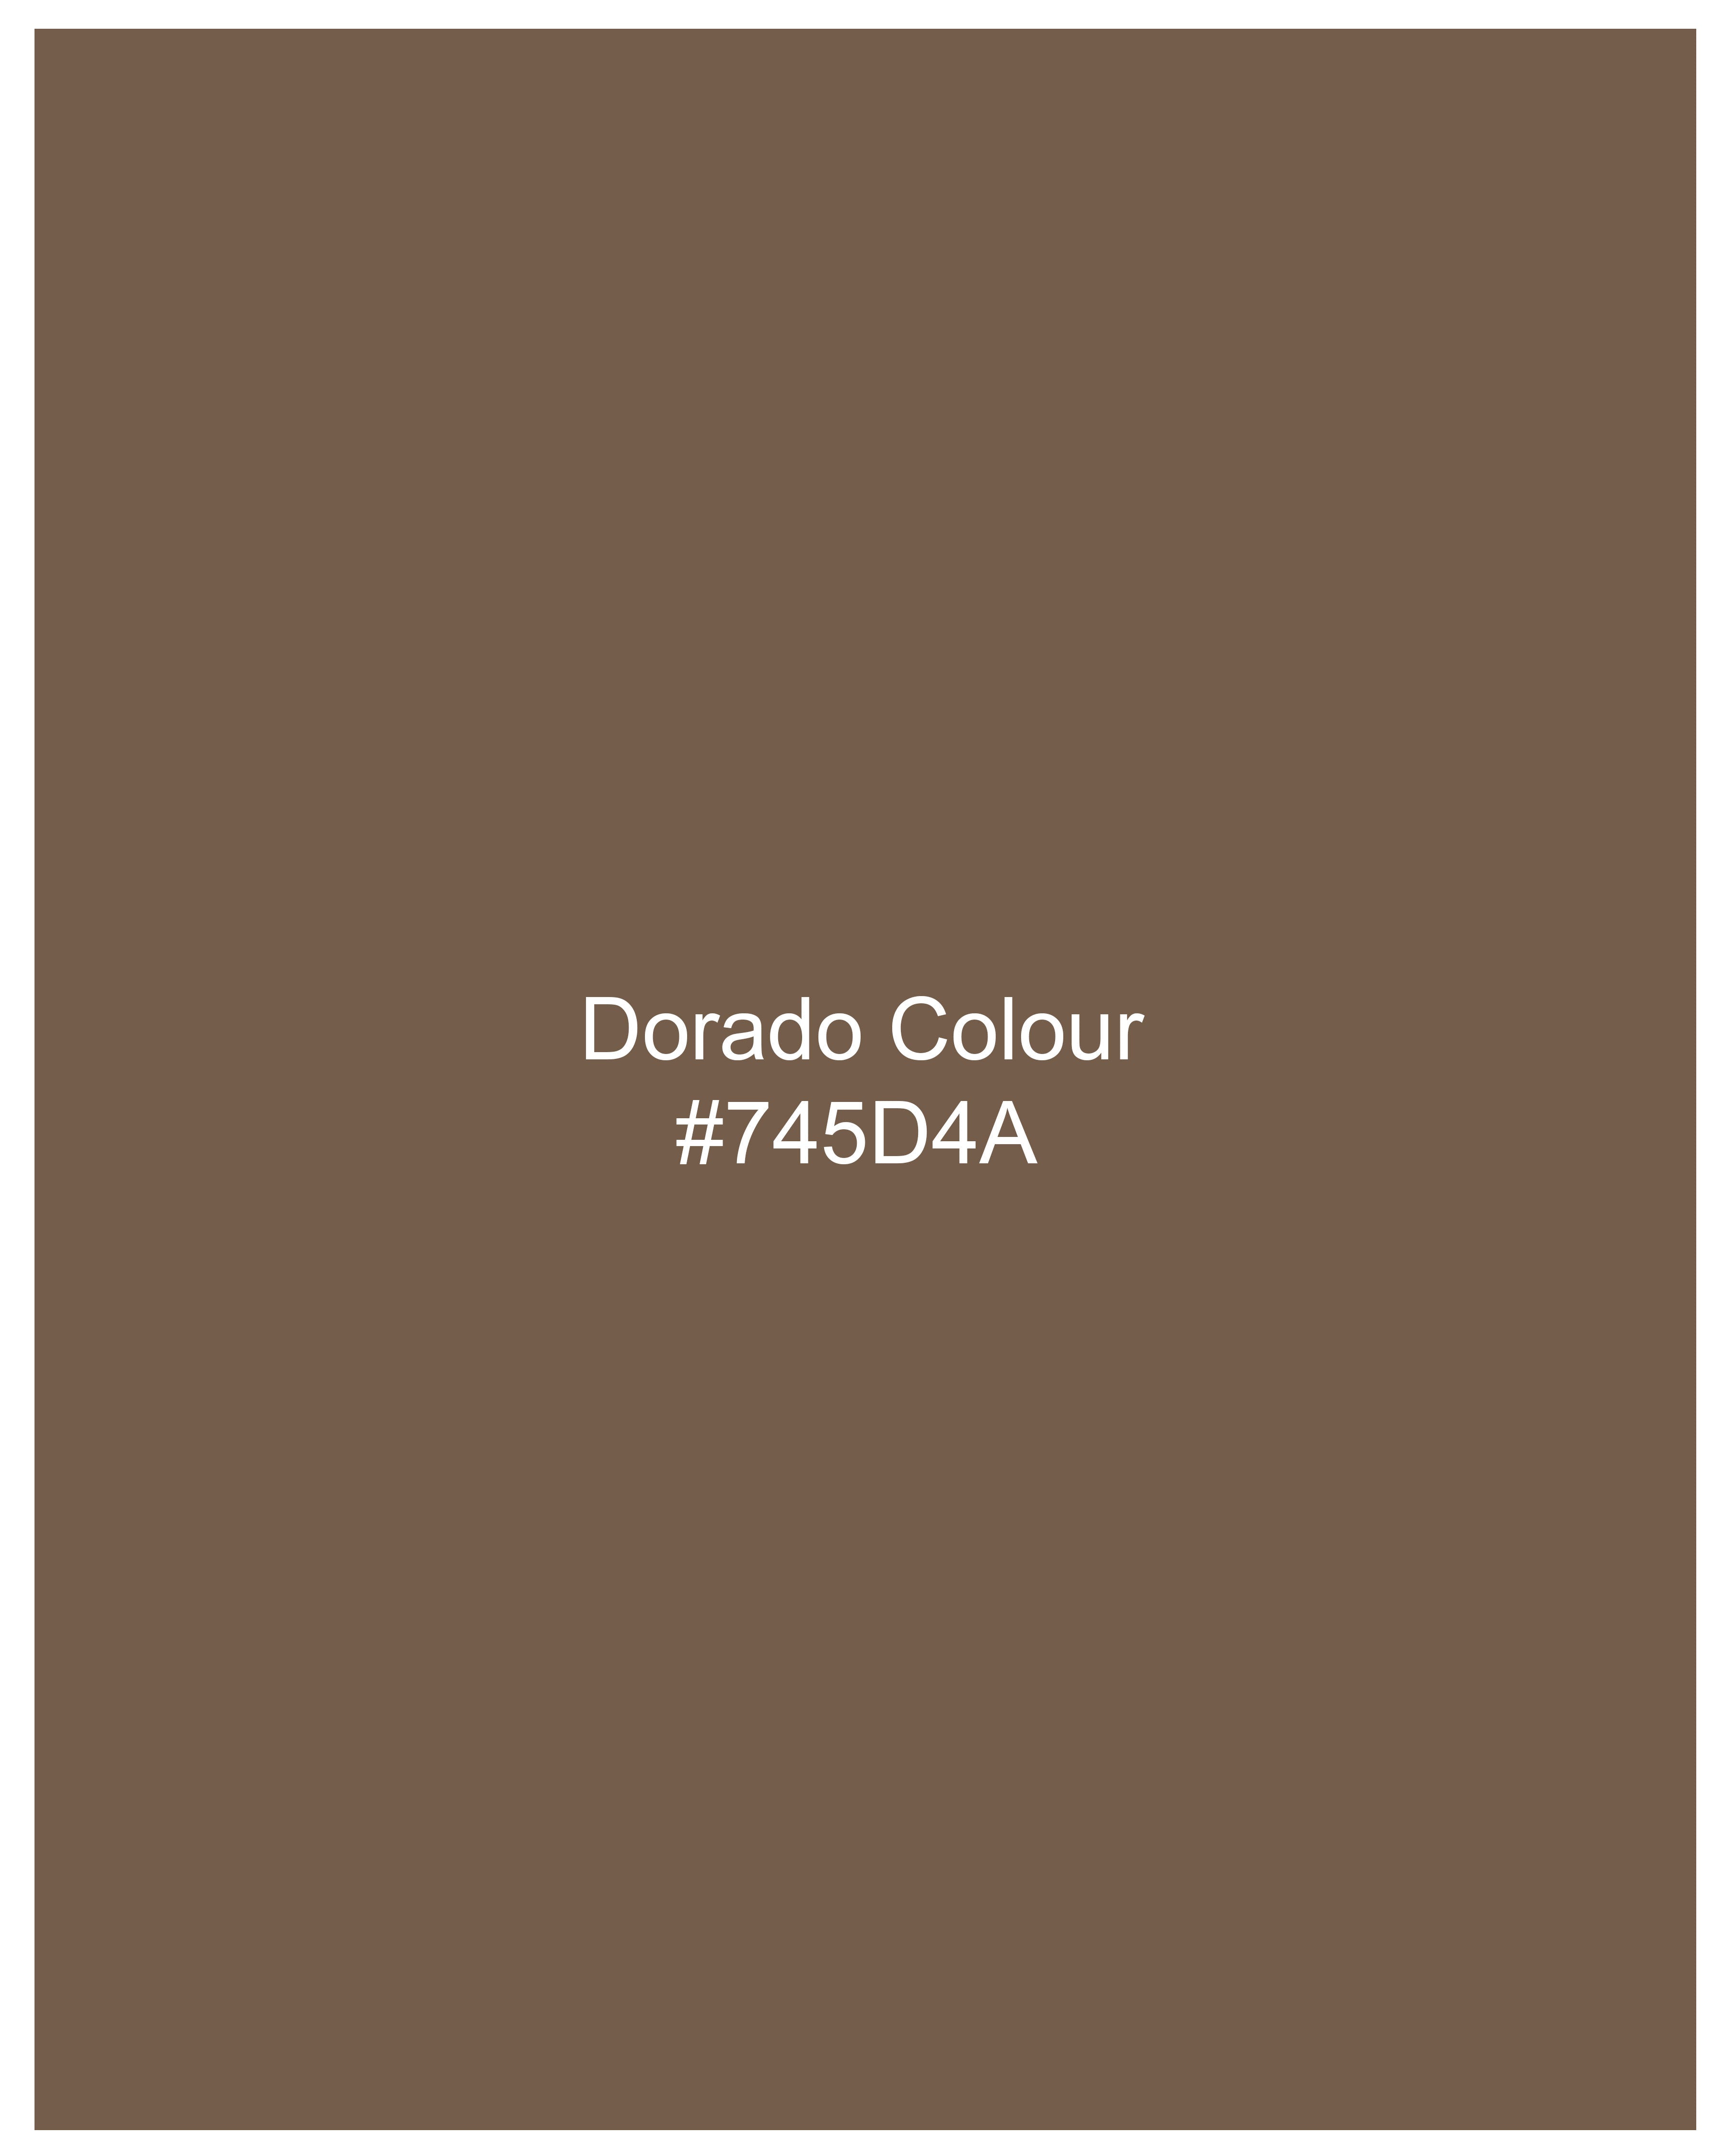 Dorado Brown Premium Cotton Pant T2384-28, T2384-30, T2384-32, T2384-34, T2384-36, T2384-38, T2384-40, T2384-42, T2384-44